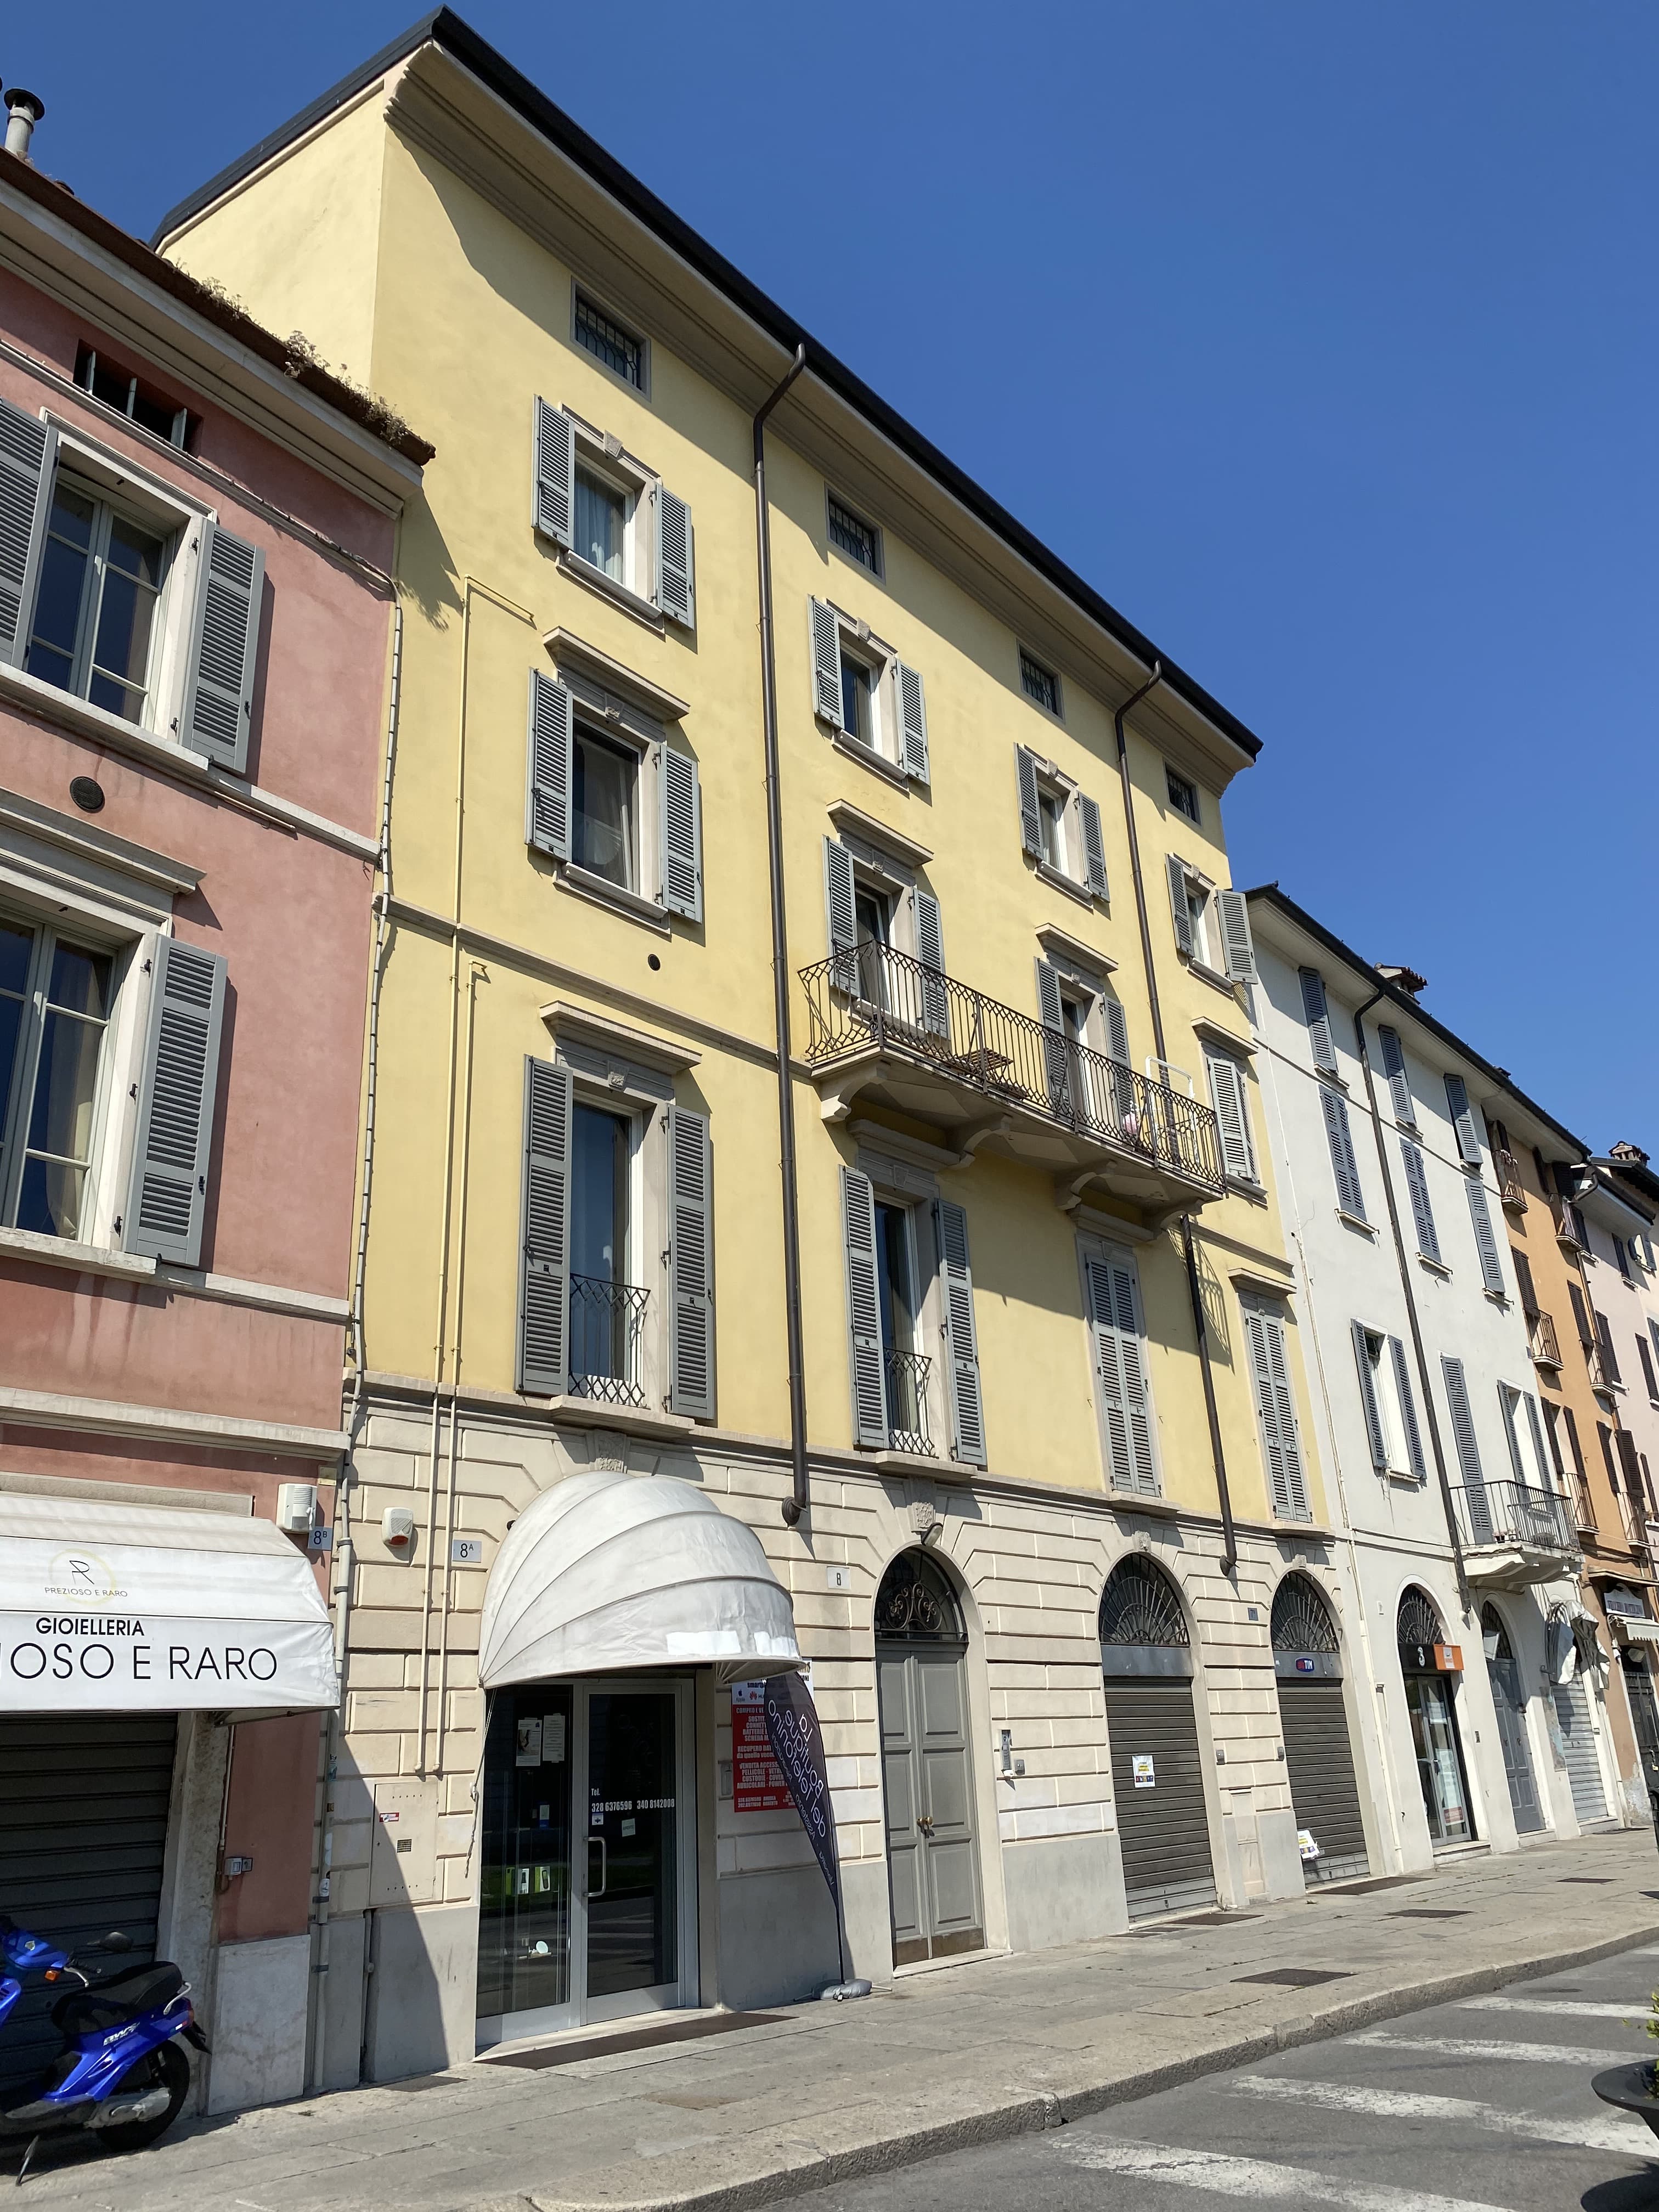 Casa in Piazzale Arnaldo, 8 (casa, in linea) - Brescia (BS)  (N.R)